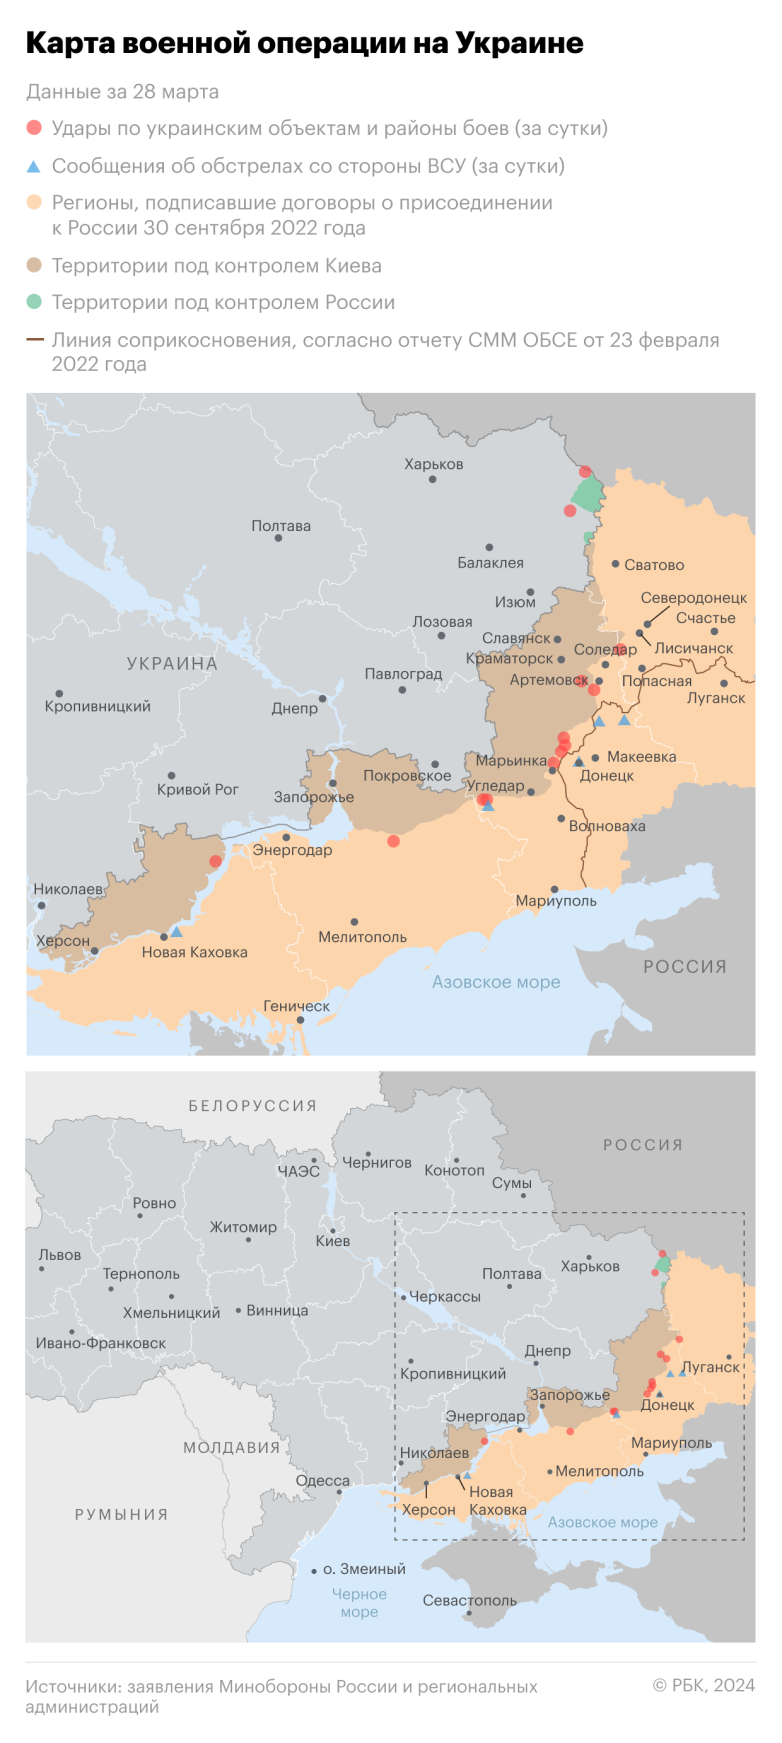 Пентагон заявляет о снижении риска эскалации конфликта на Украине